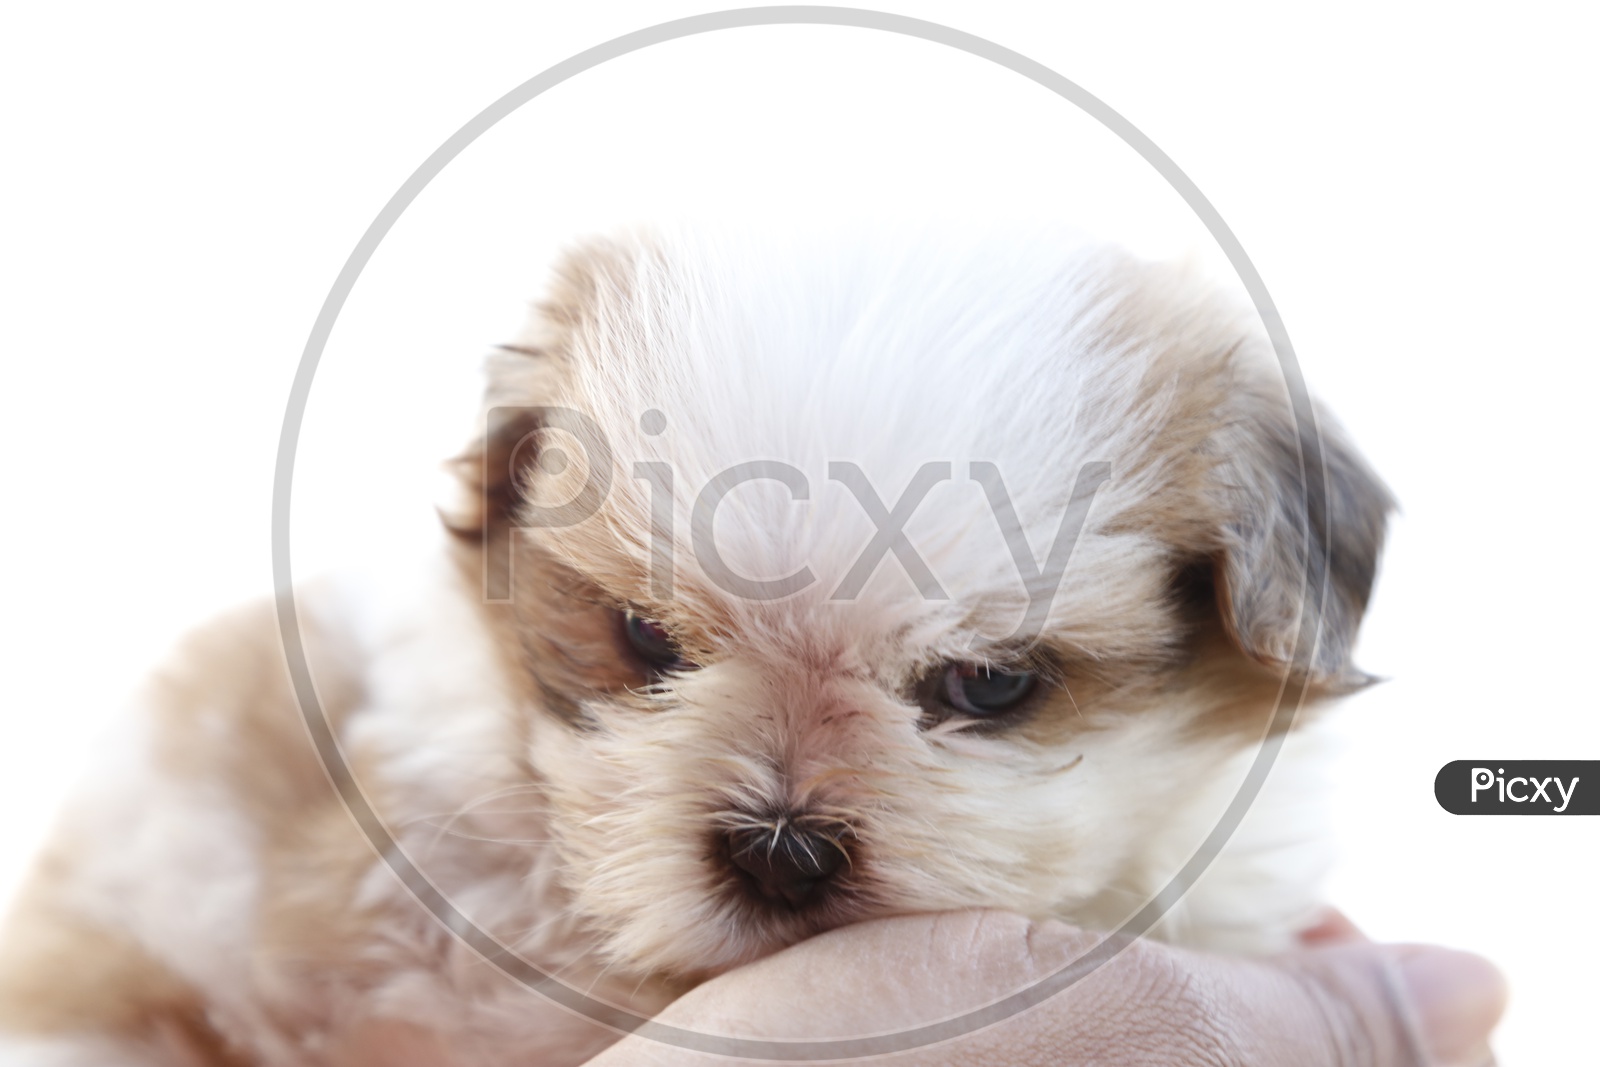 Cute Shih Tzu Dog Puppy